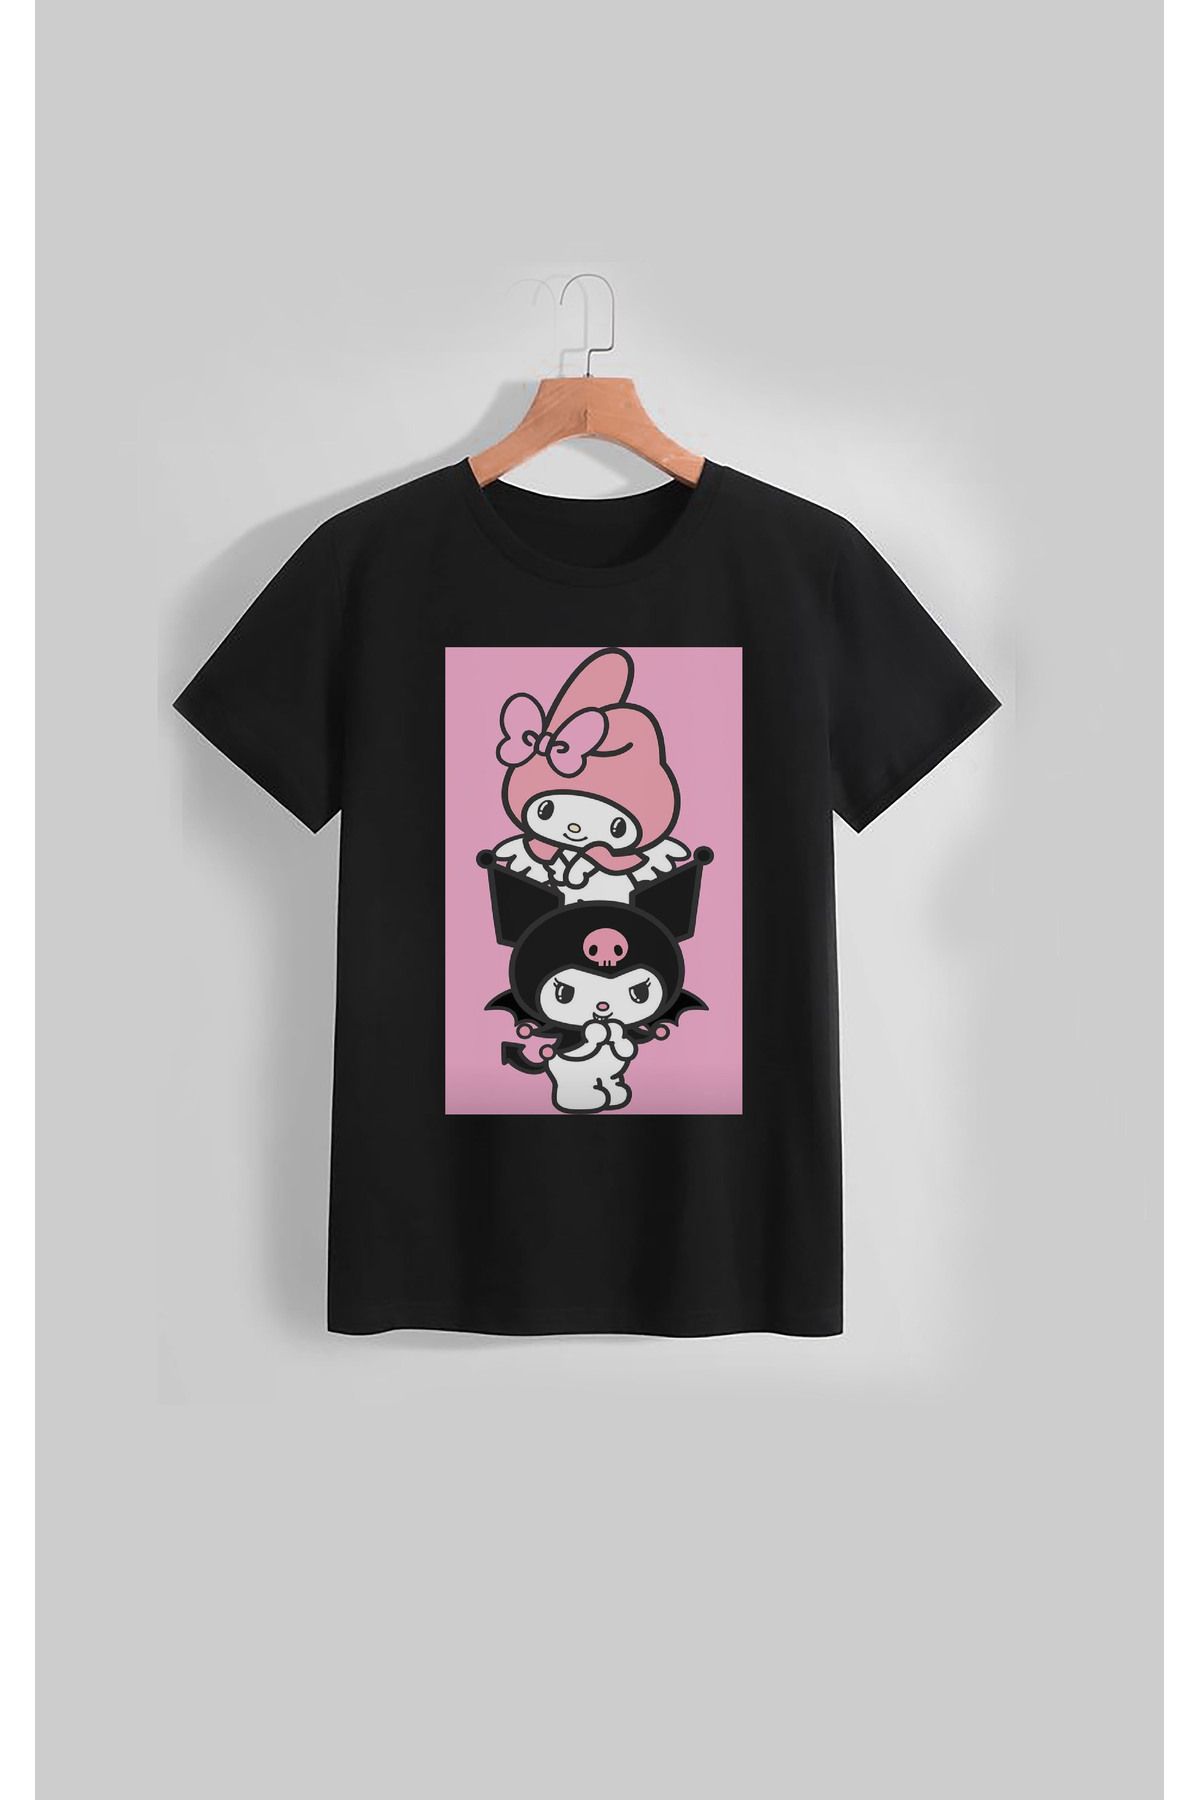 Darkia Hello Kitty Kuromi Melody Özel Tasarım Baskılı Çocuk Tişört T-shirt